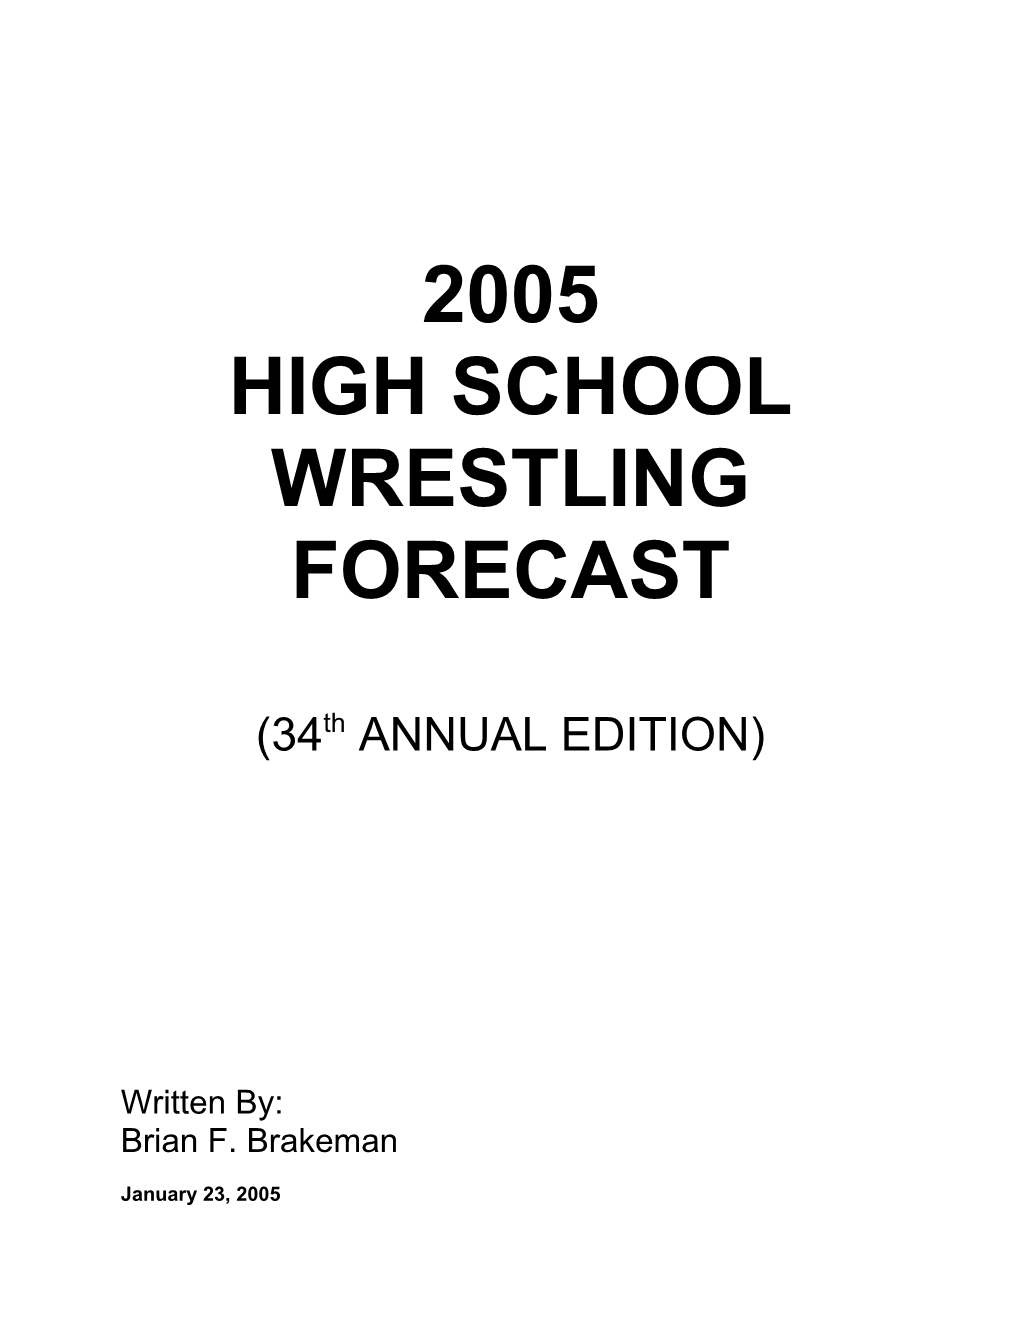 2002 High School Wrestling Forecast